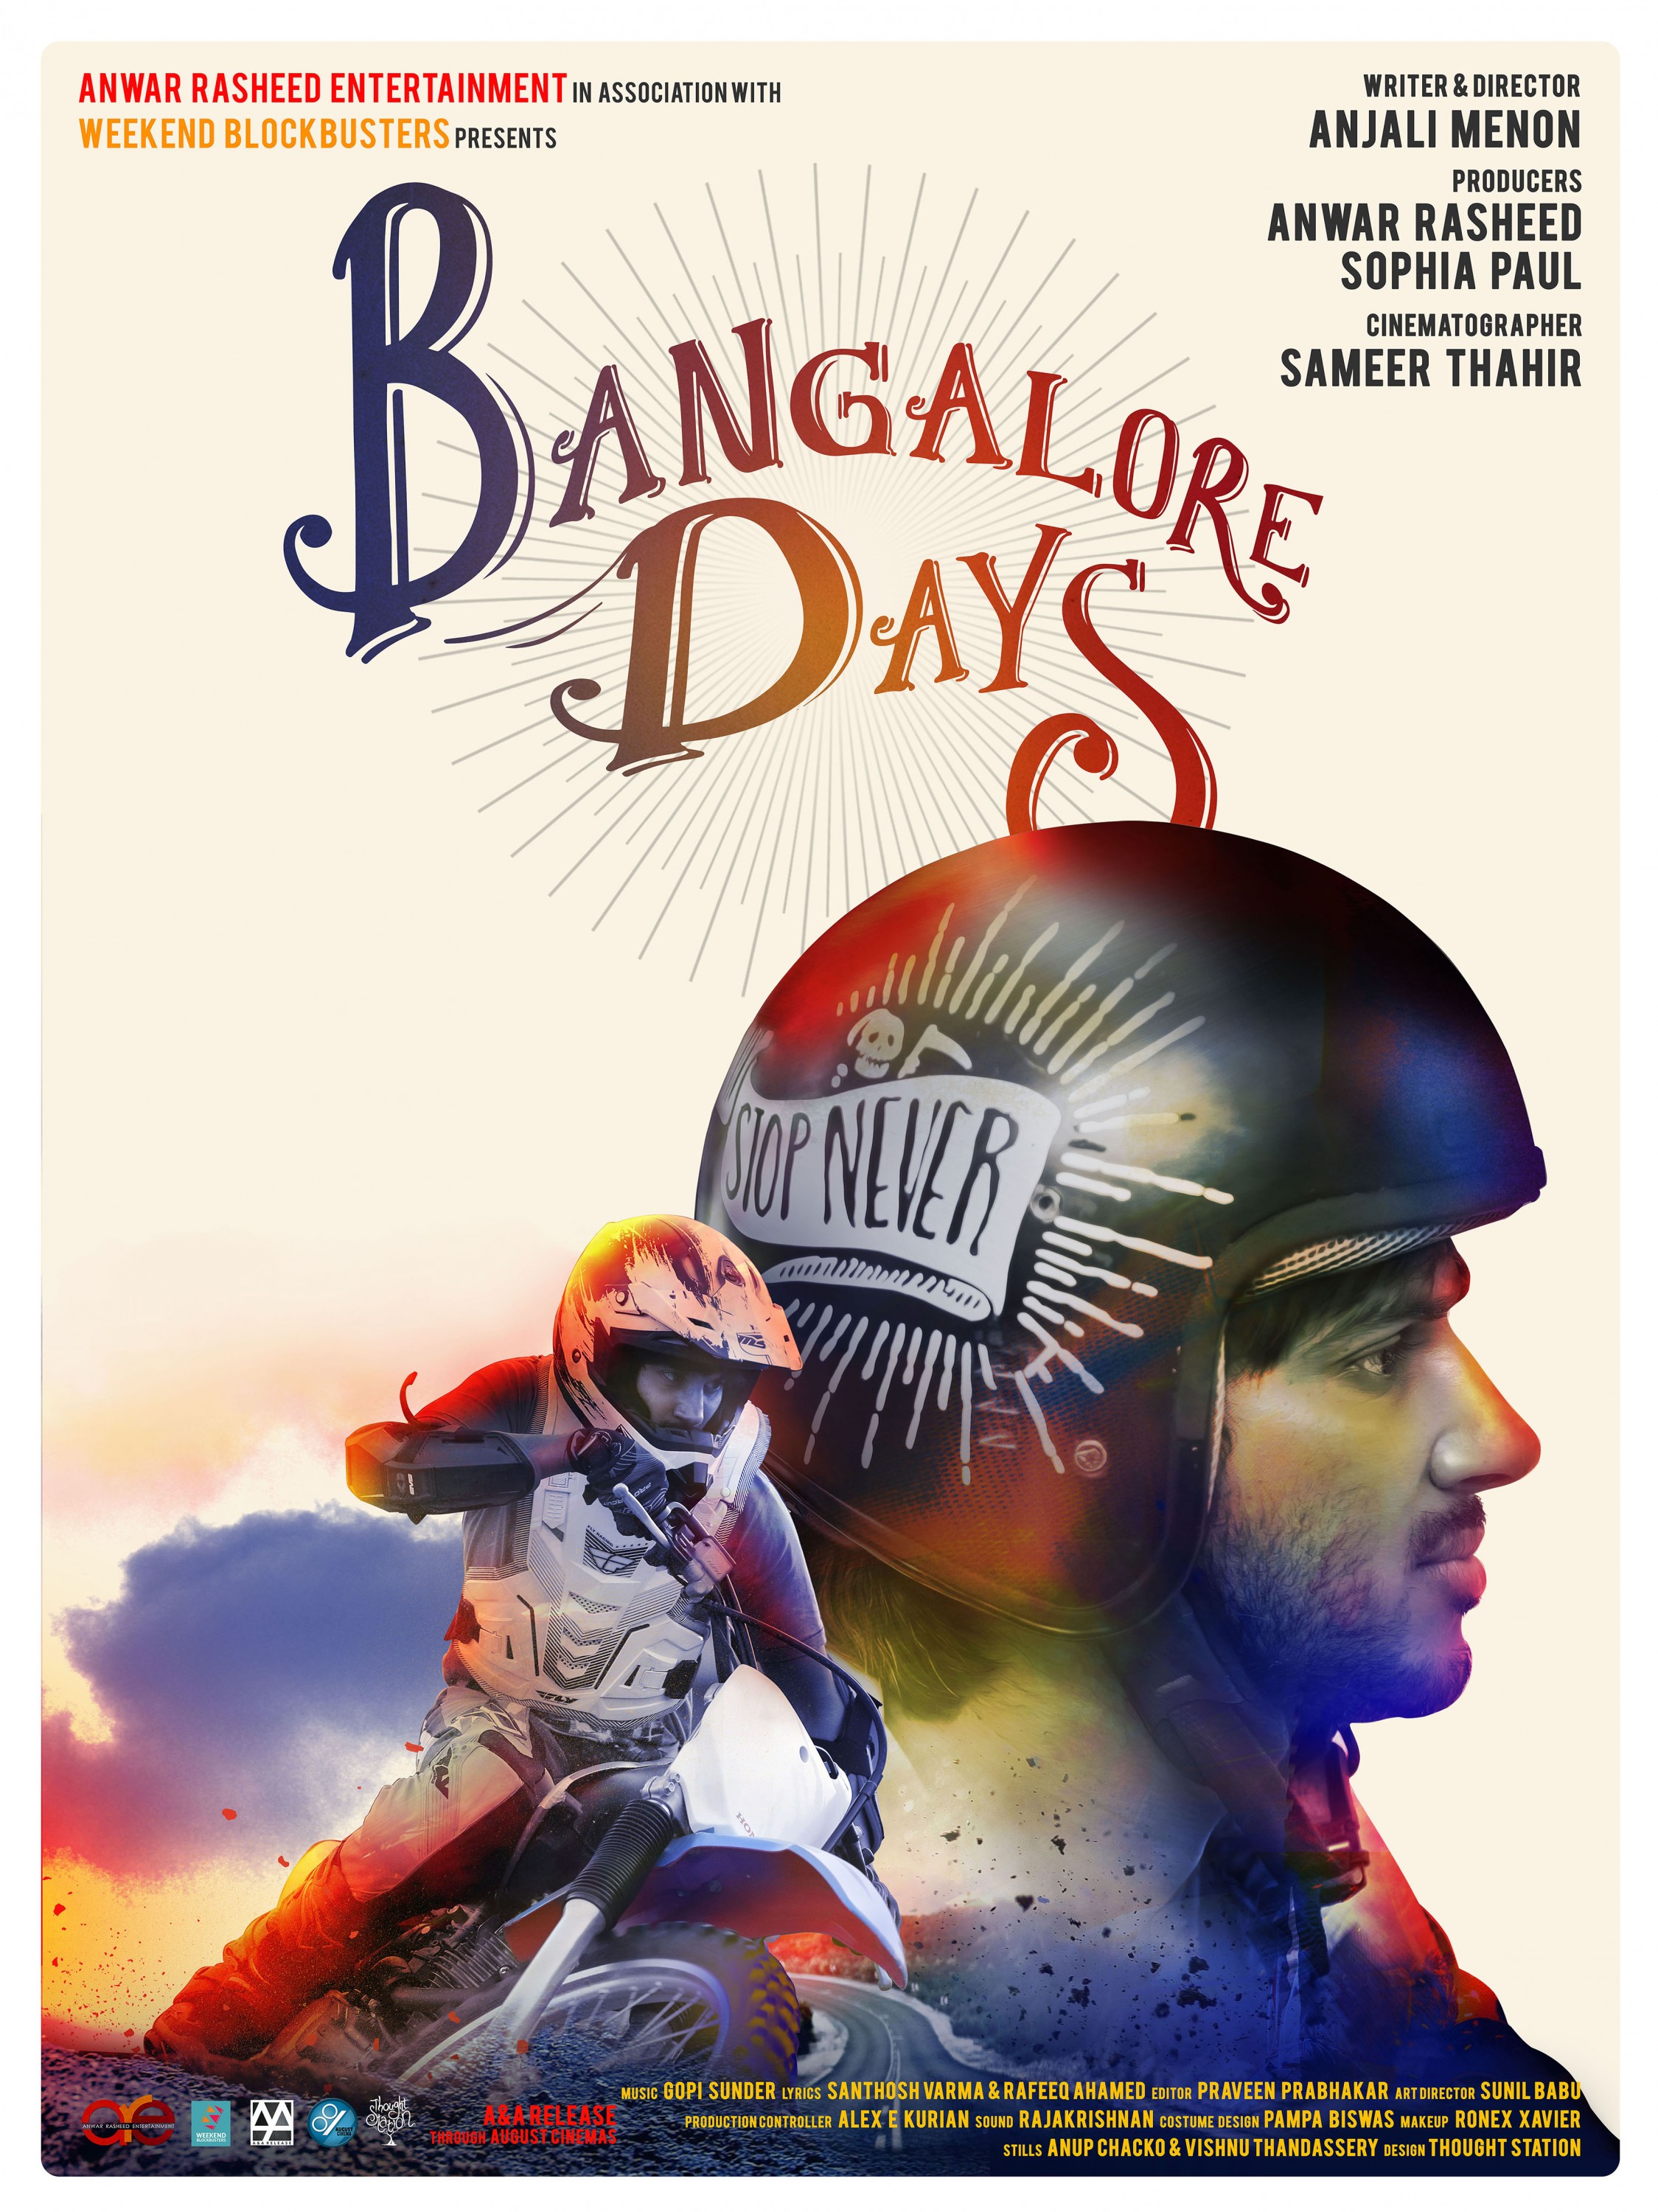 Mega Sized Movie Poster Image for Bangalore Days (#4 of 7)